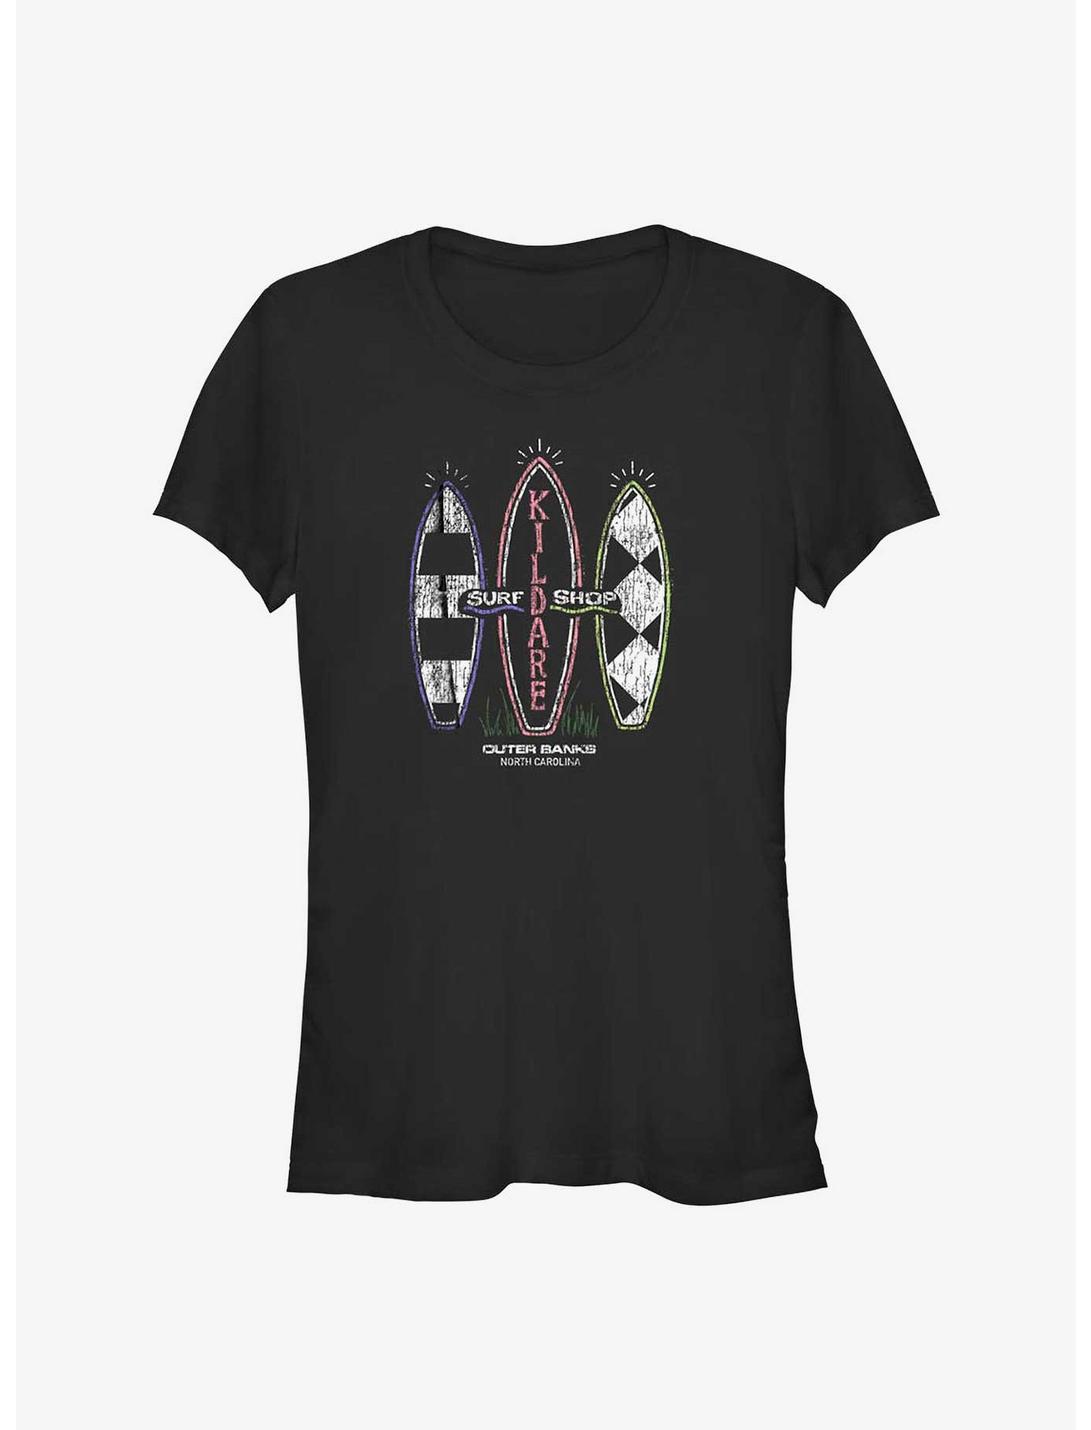 Outer Banks Kildare Surf Shop Girls T-Shirt, BLACK, hi-res